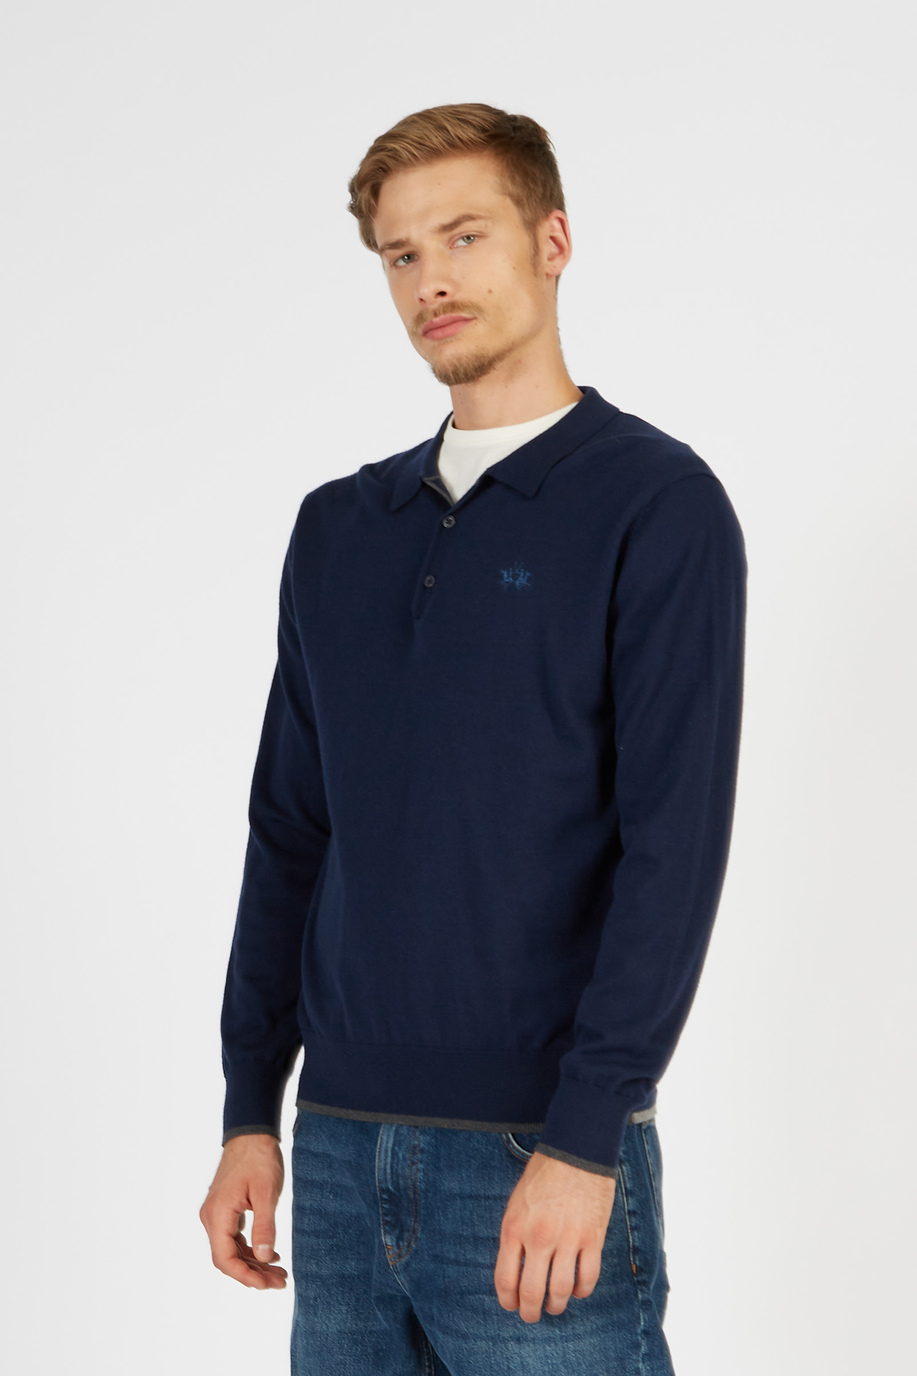 Men’s Blue Ribbon sweater in regular fit cashmere blend - Elegant looks for him | La Martina - Official Online Shop